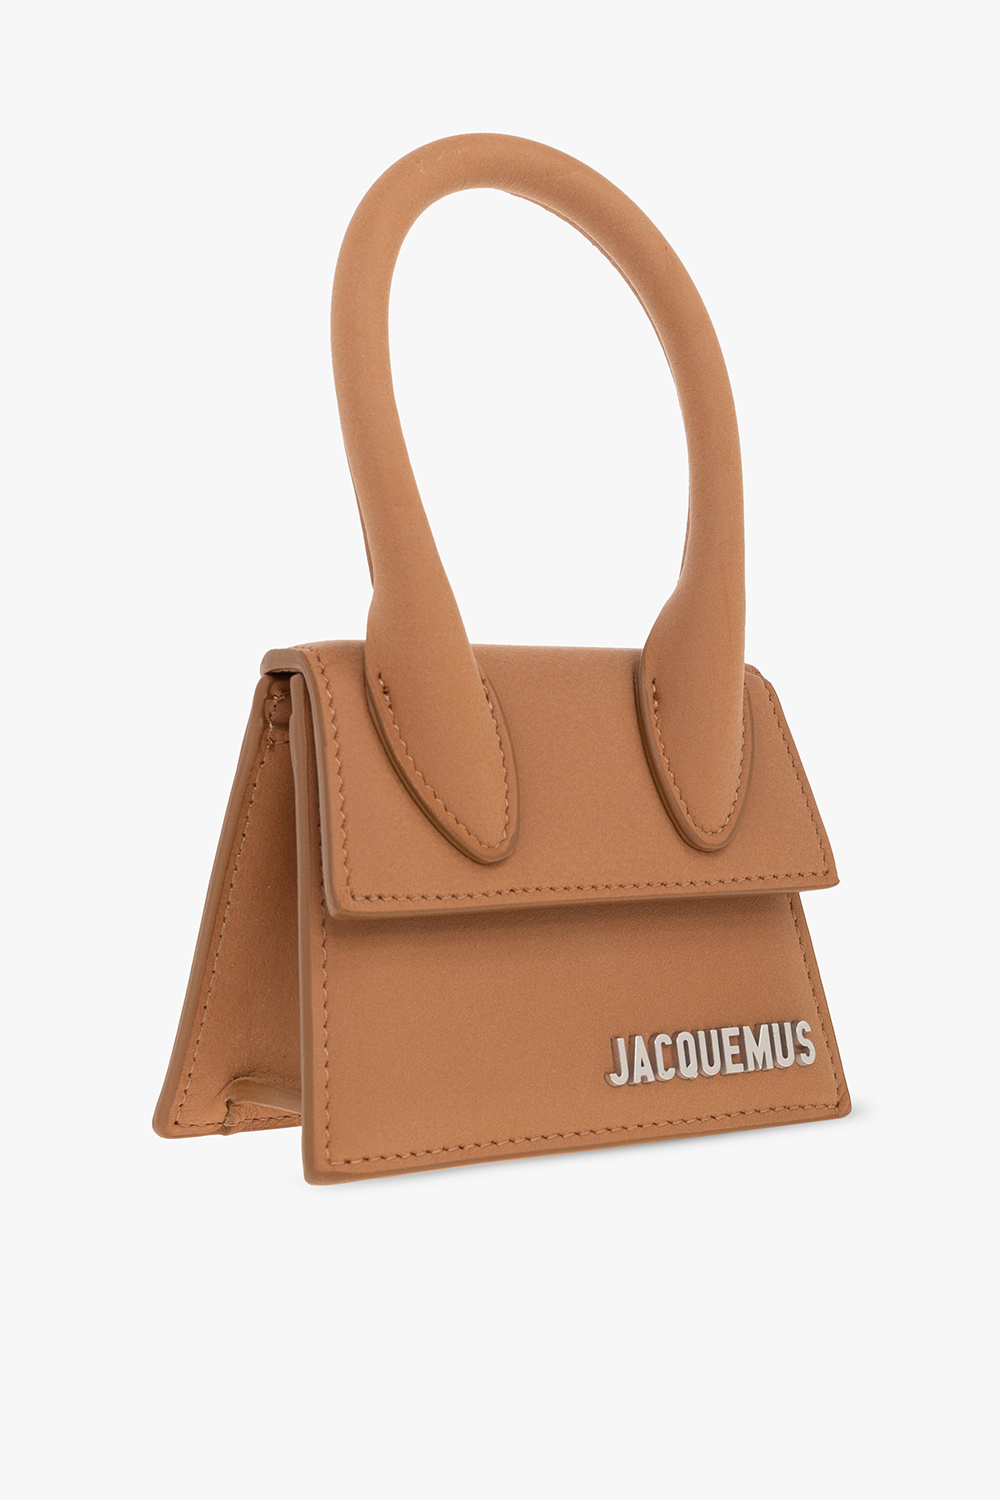 Jacquemus ‘Le Chiquito’ shoulder Mehry bag